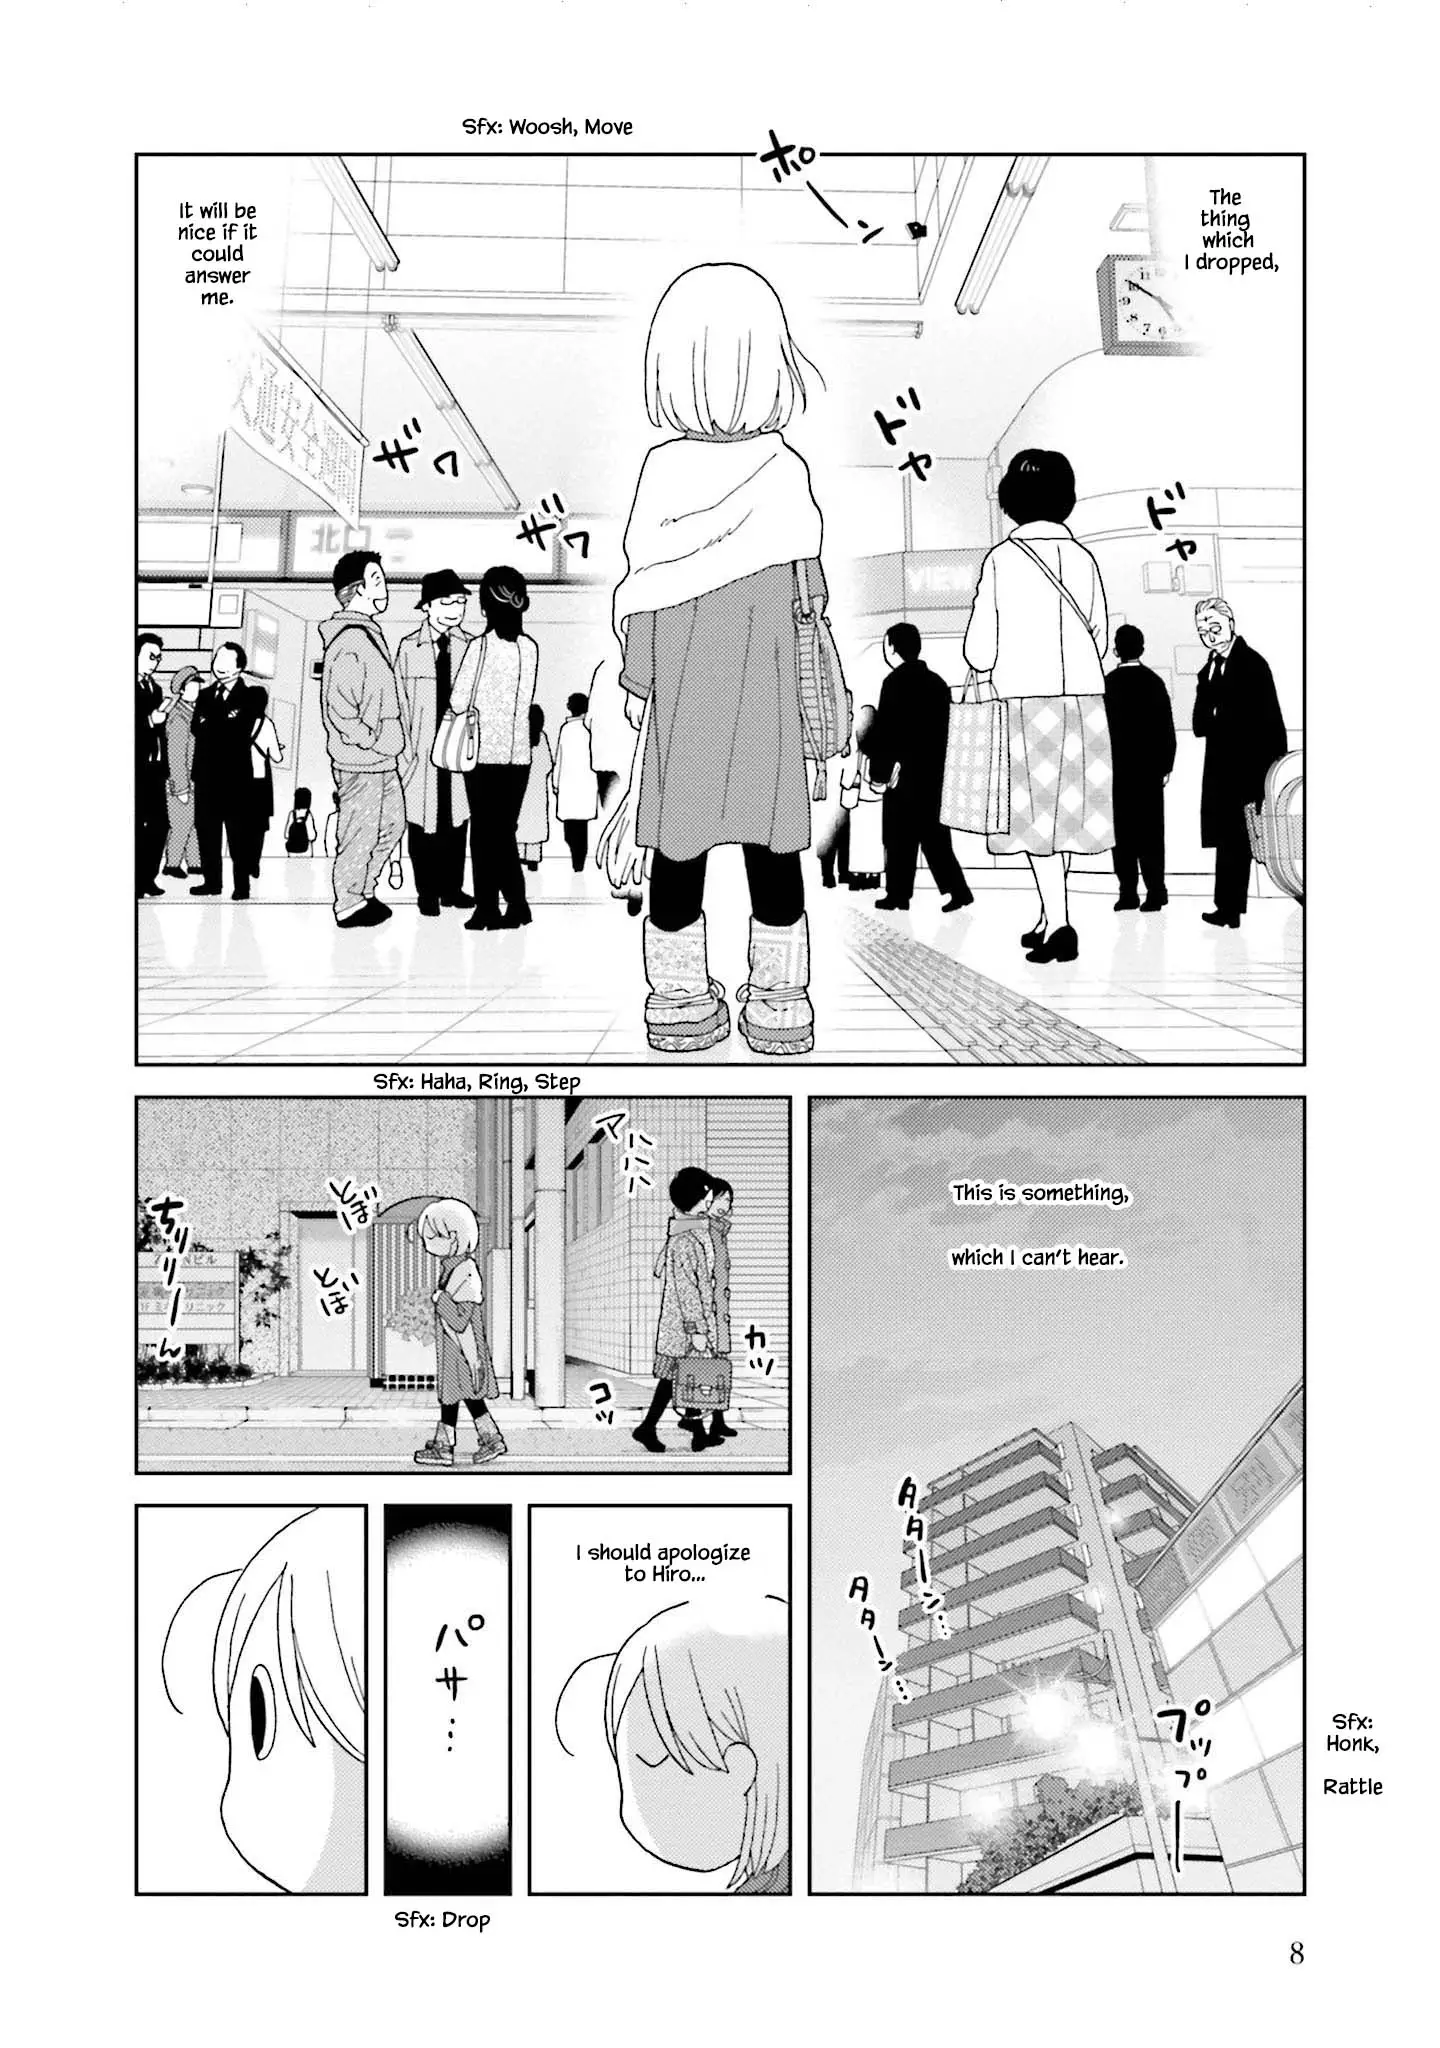 Takako-San - 64 page 9-8266188e